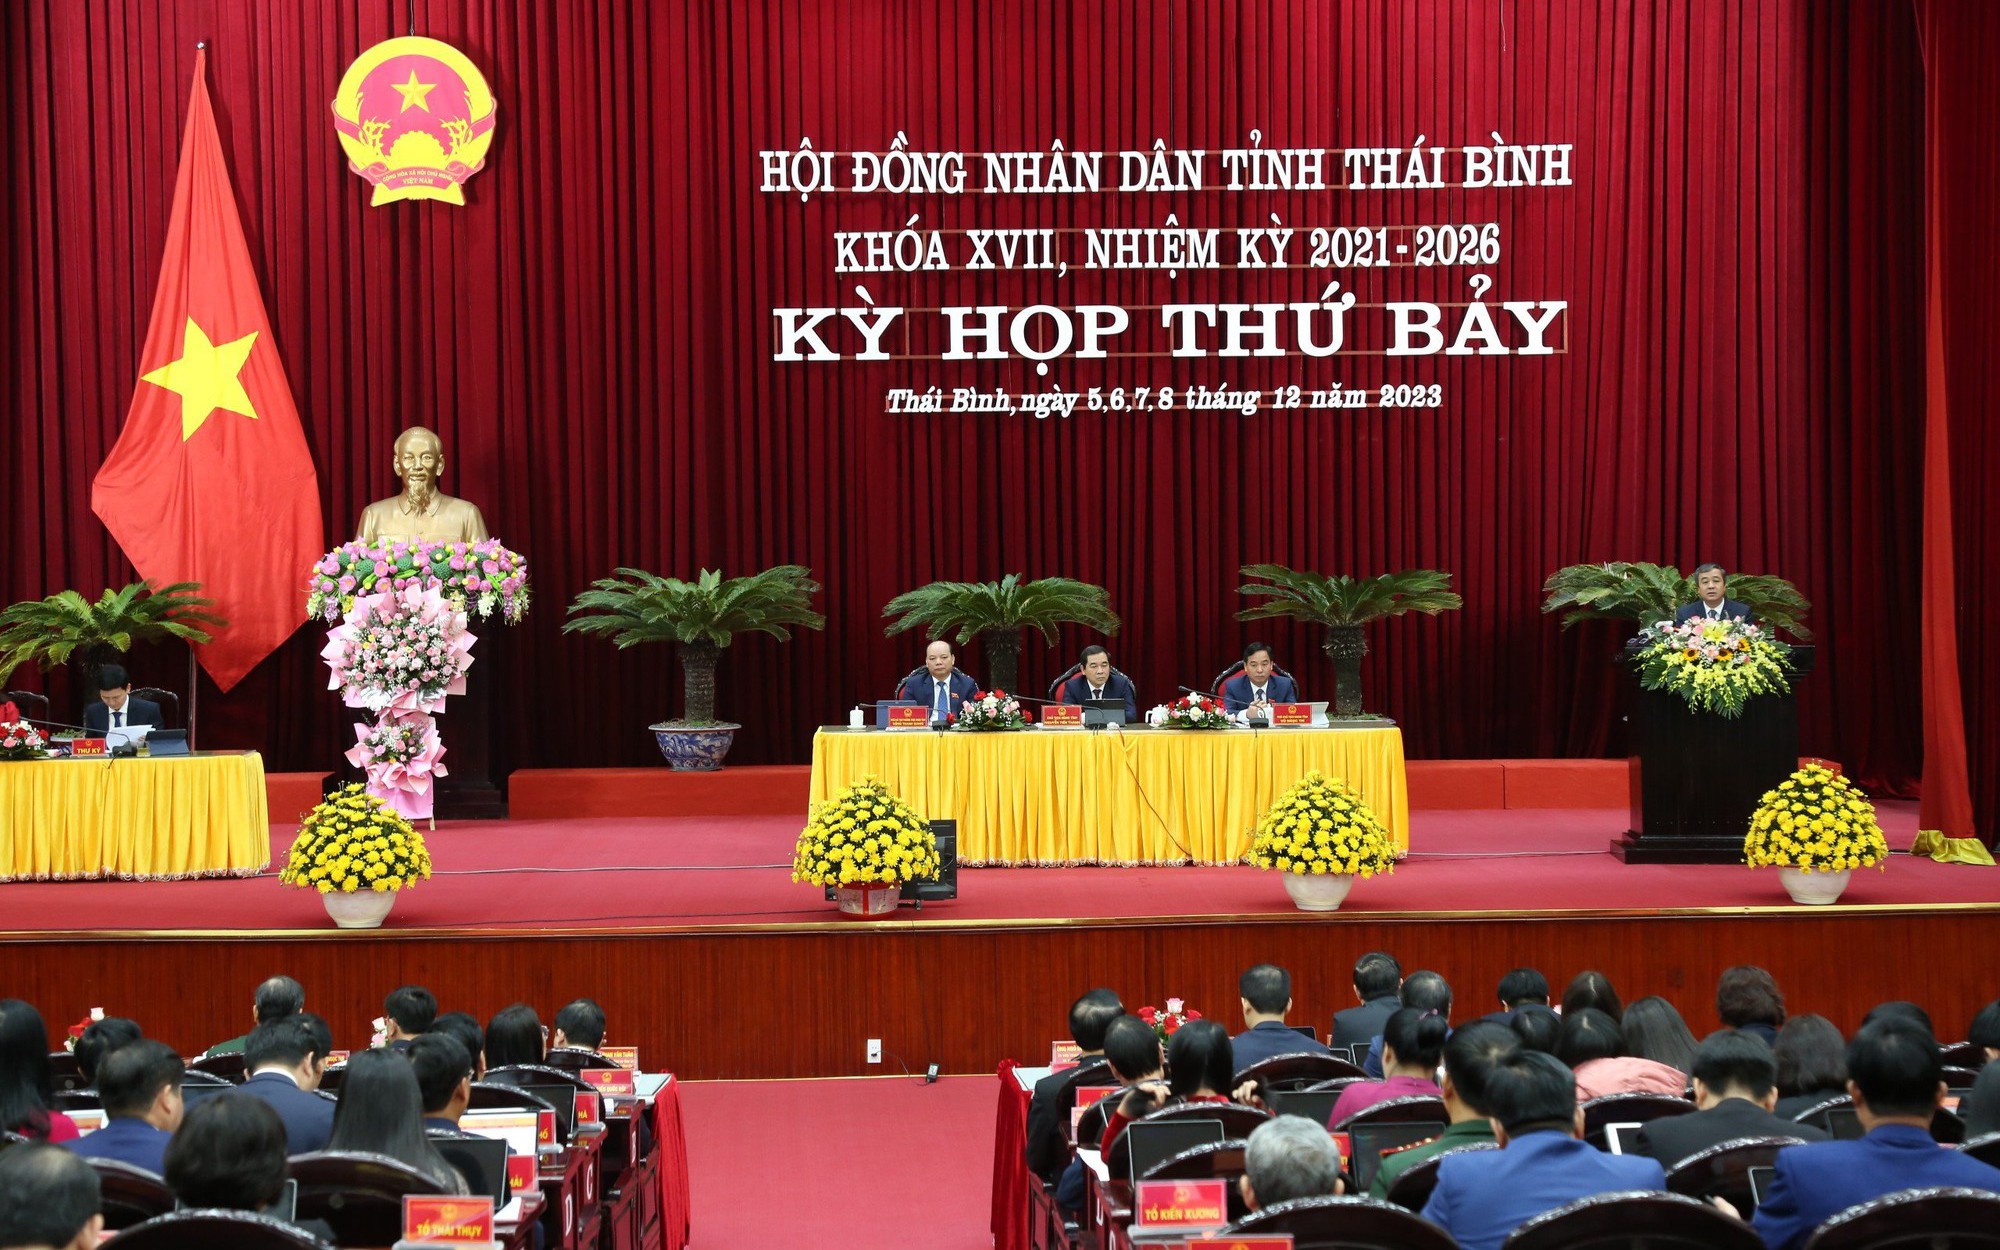 Chủ tịch UBND và Chủ tịch HĐND tỉnh Thái Bình đạt 100% phiếu tín nhiệm cao